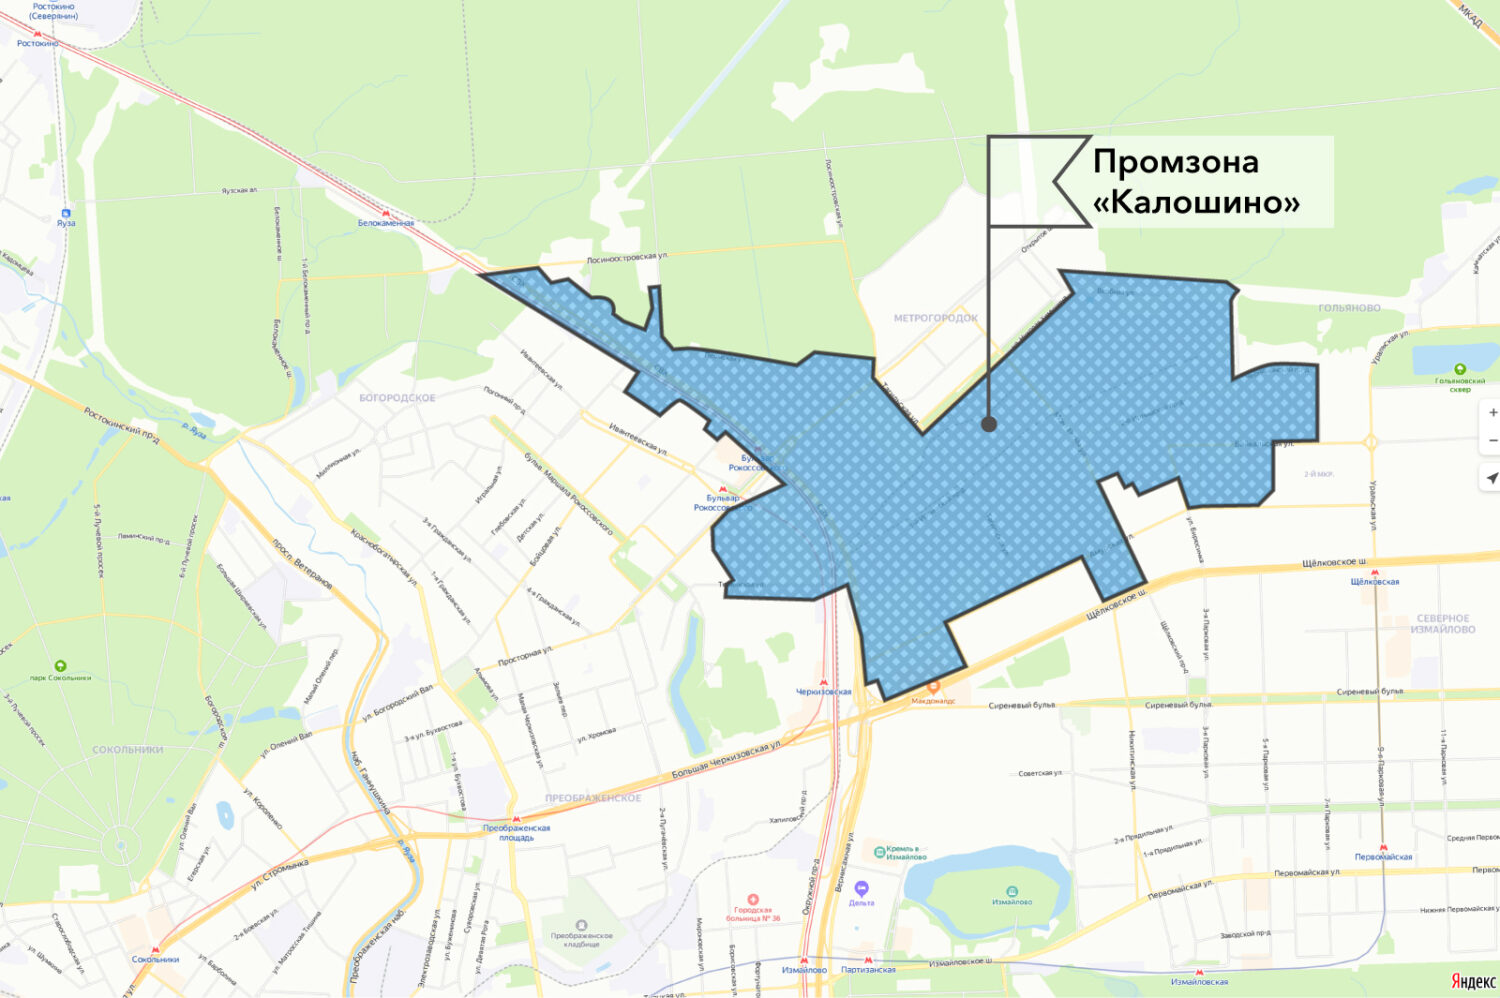 Жилые кварталы построят на месте промзоны "Калошино"